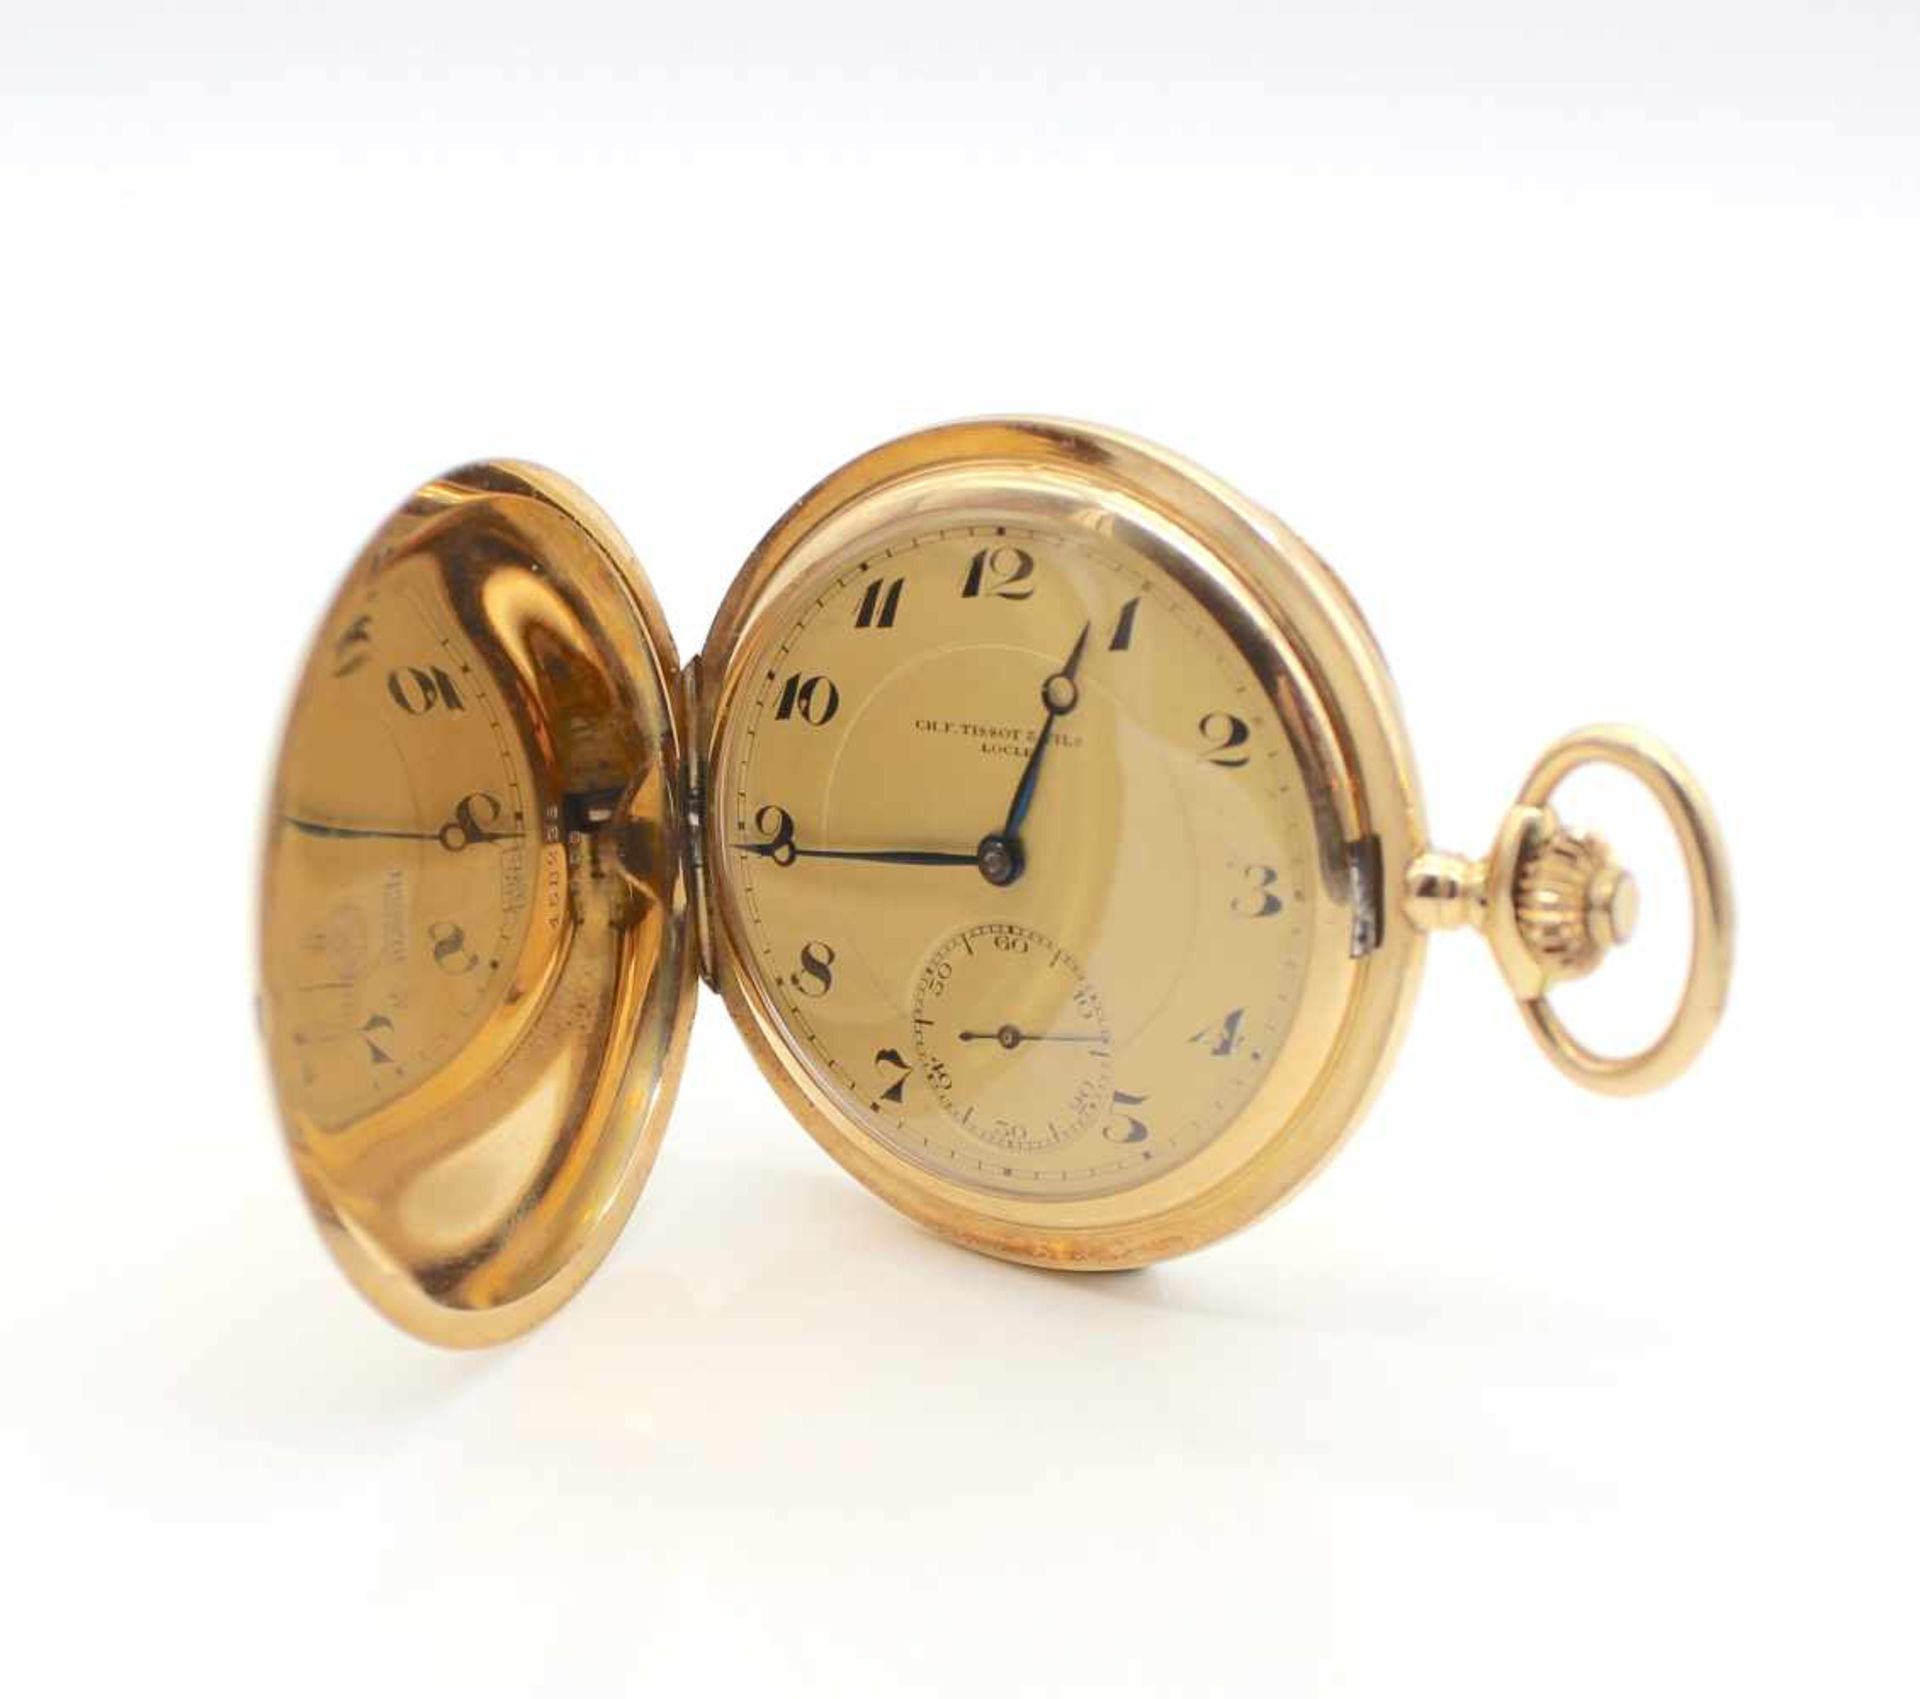 CH.F. Tissot & Fils Lokle Taschenuhr 585er Gold, Gewicht ca. 104 g Durchmesser ca. 55 mm. Die Uhr